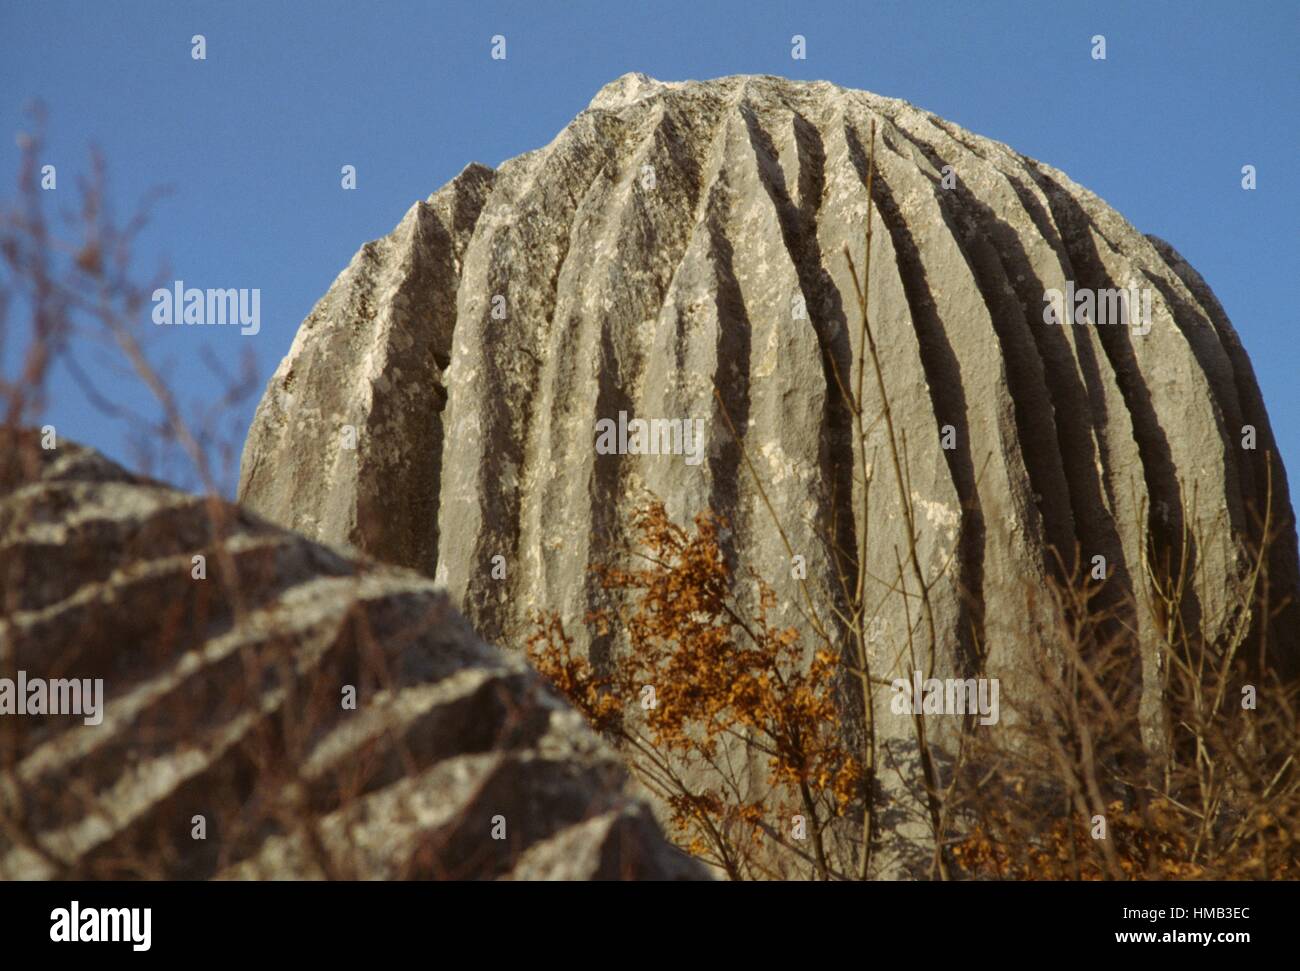 Dome-shaped rock, near Rocca di Mezzo, Abruzzo, Italy. Stock Photo